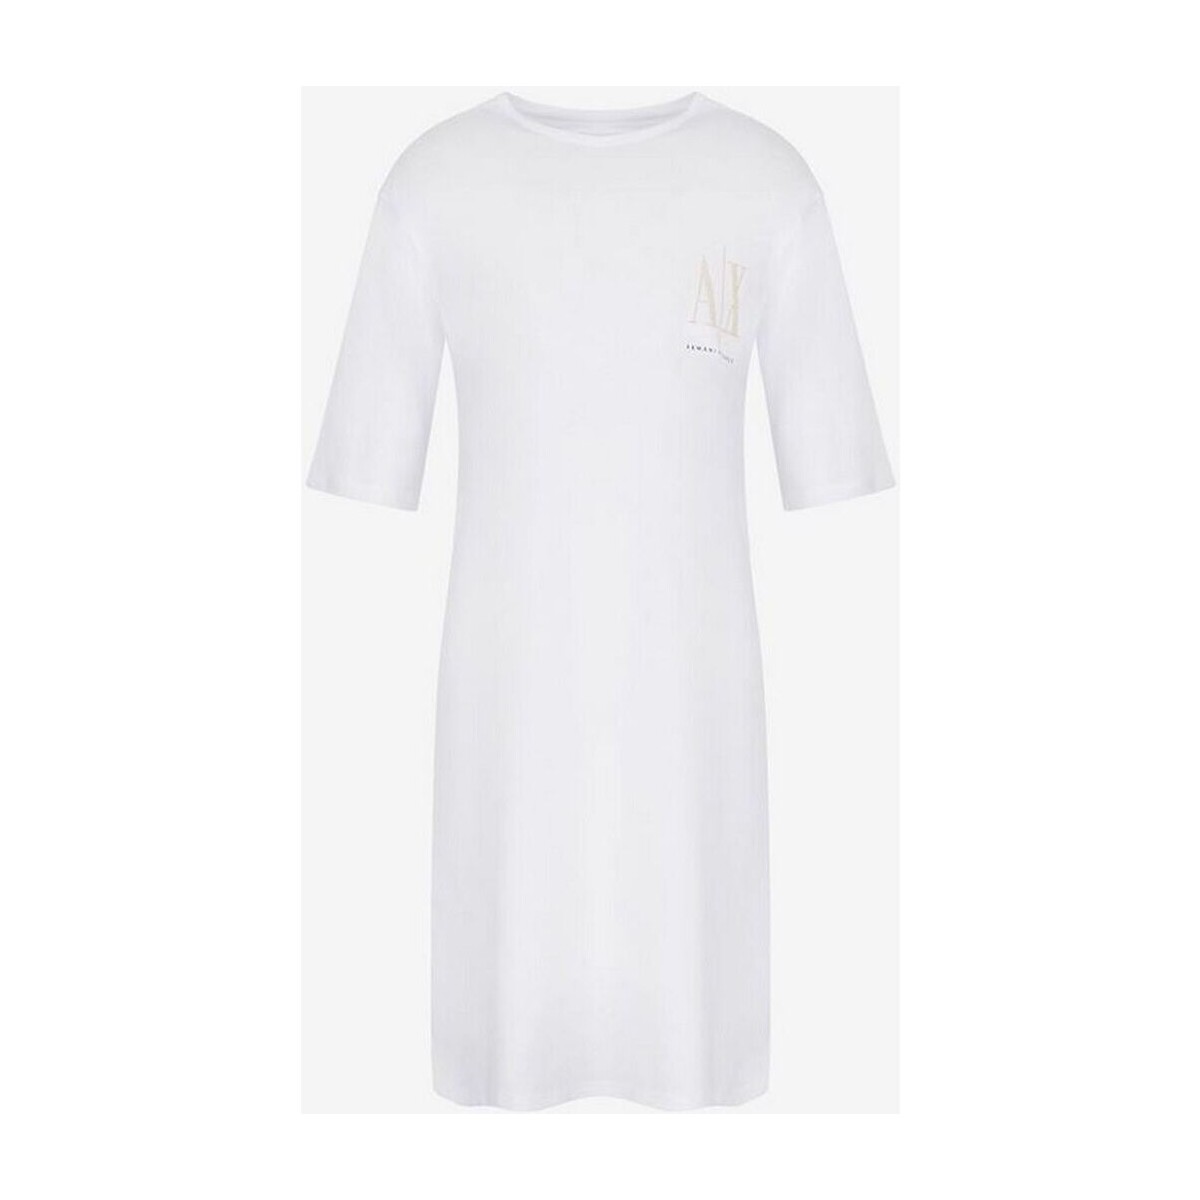 Textil Mulher Vestidos compridos EAX  Branco